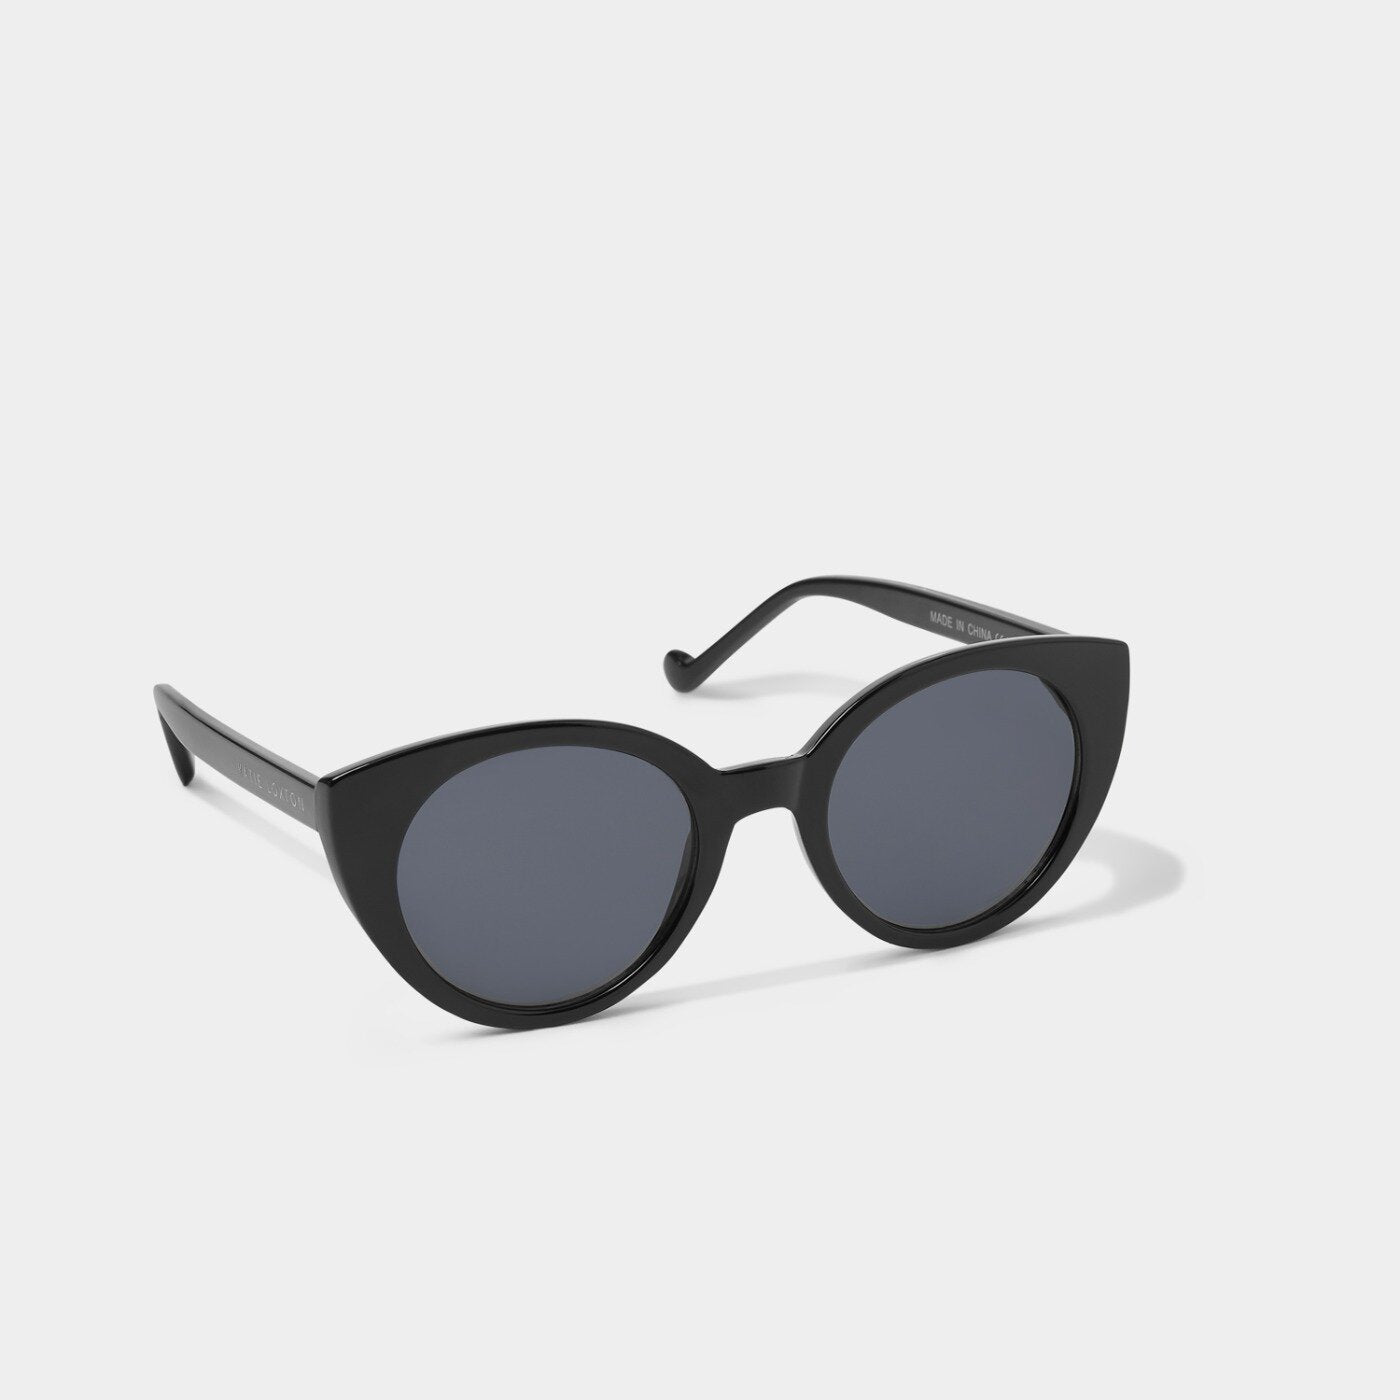 Black Paris Sunglasses